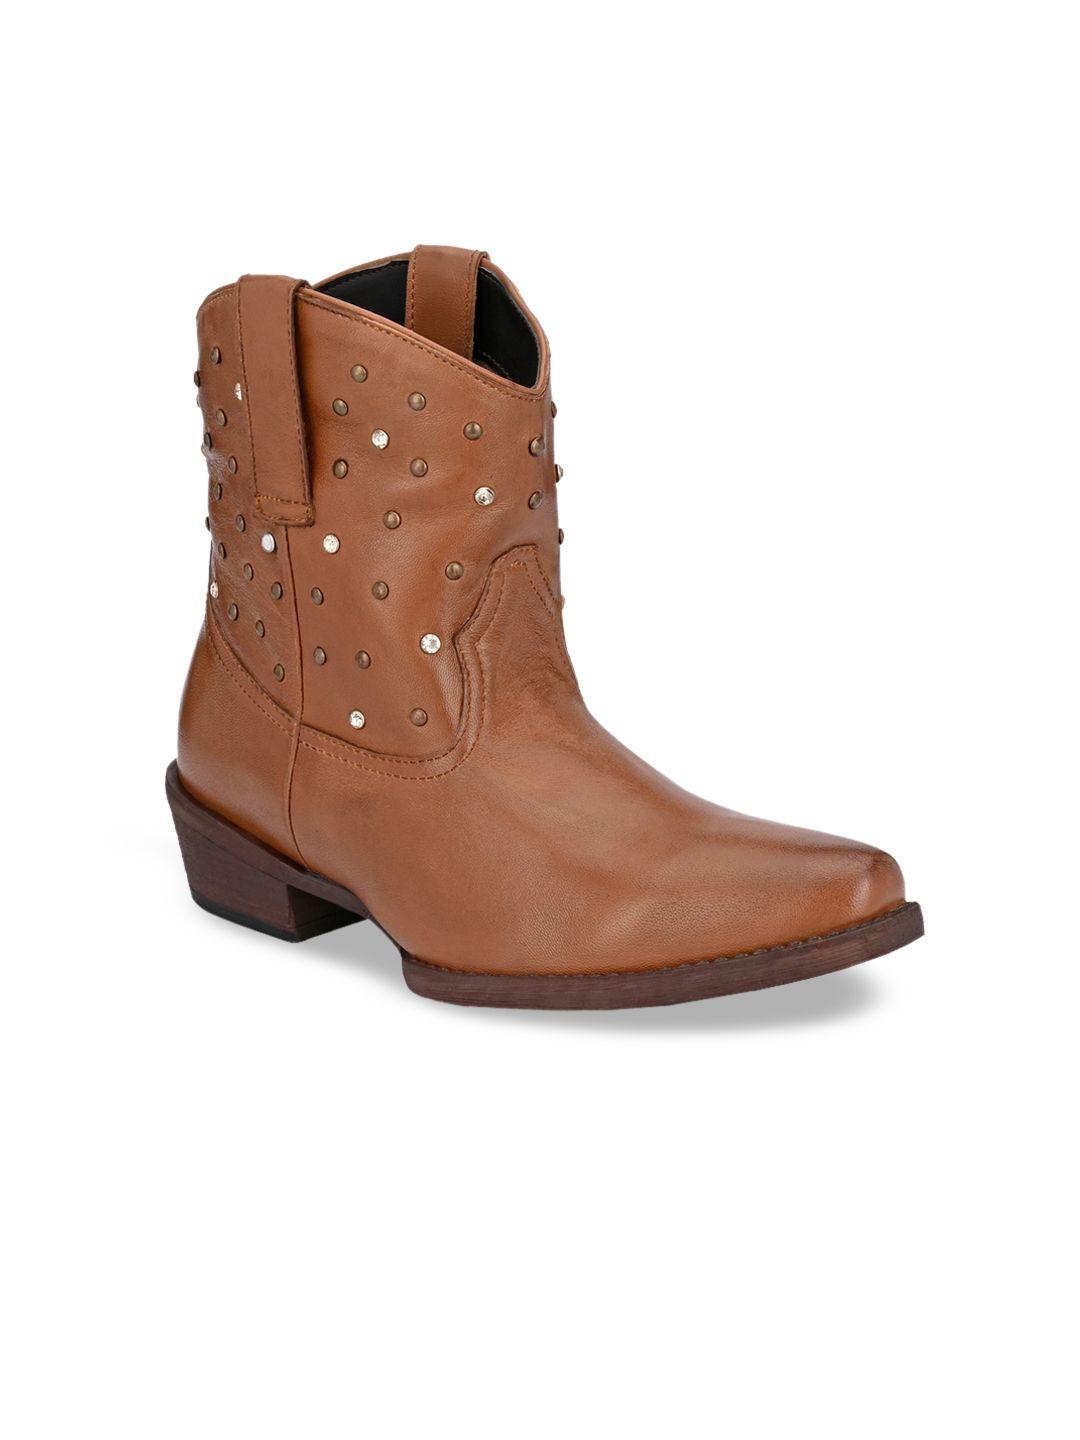 carlo romano women tan genuine leather flat boots